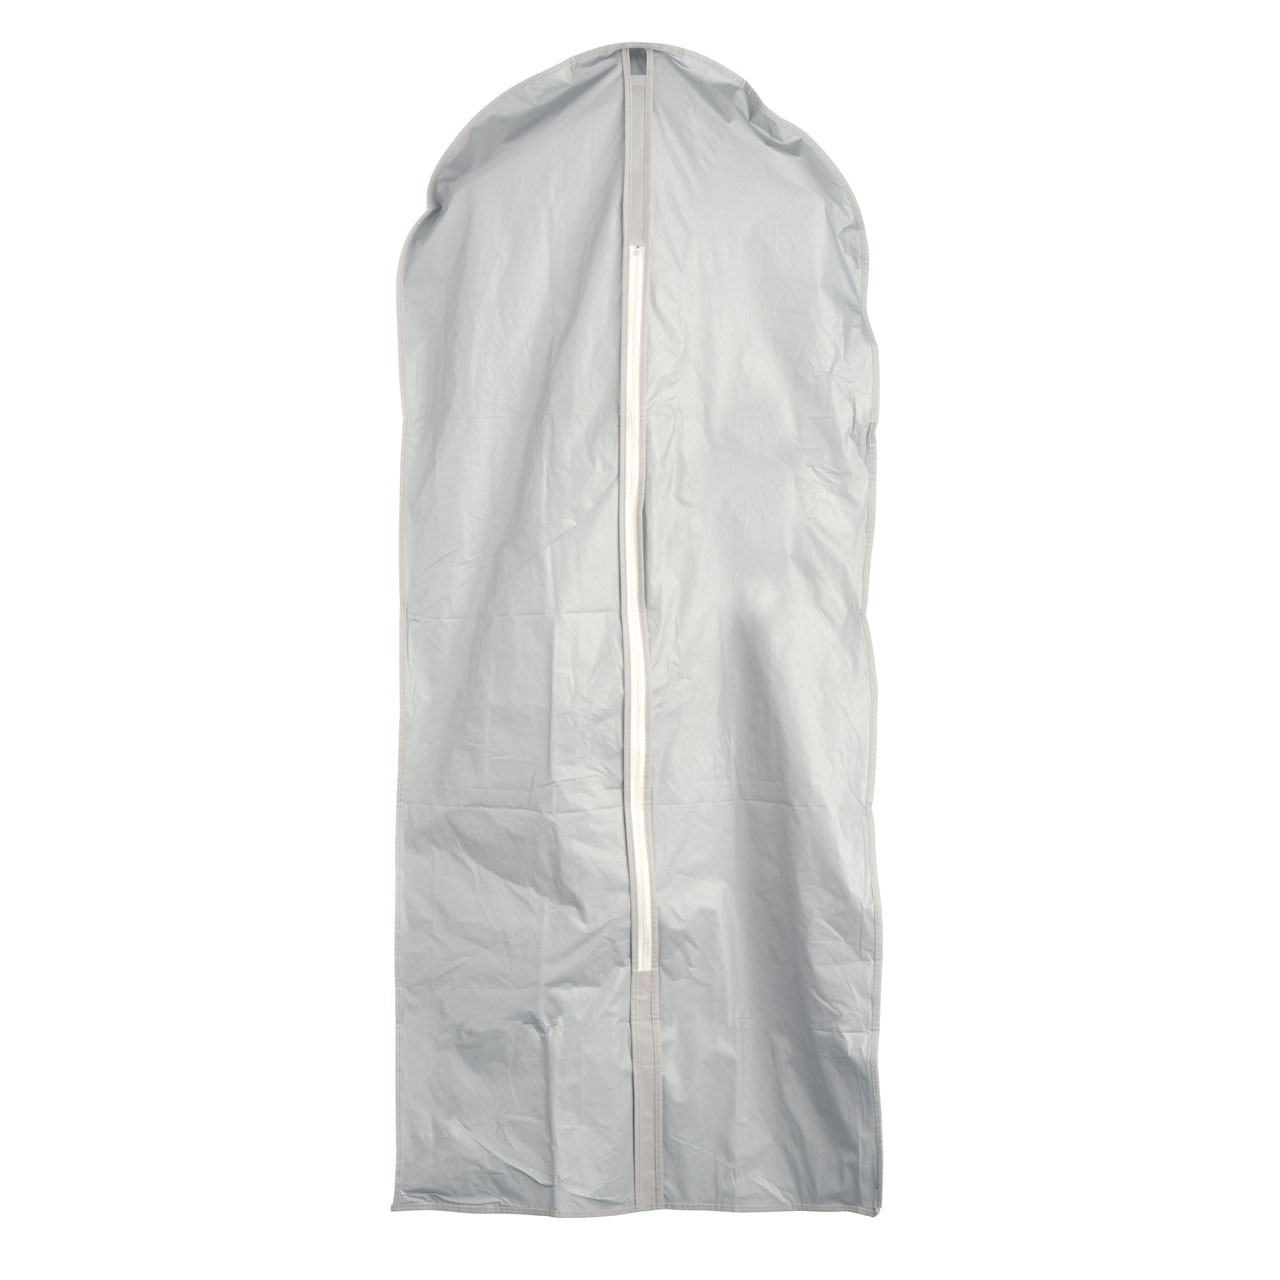 1-Piece Dress Storage Cover - Grey